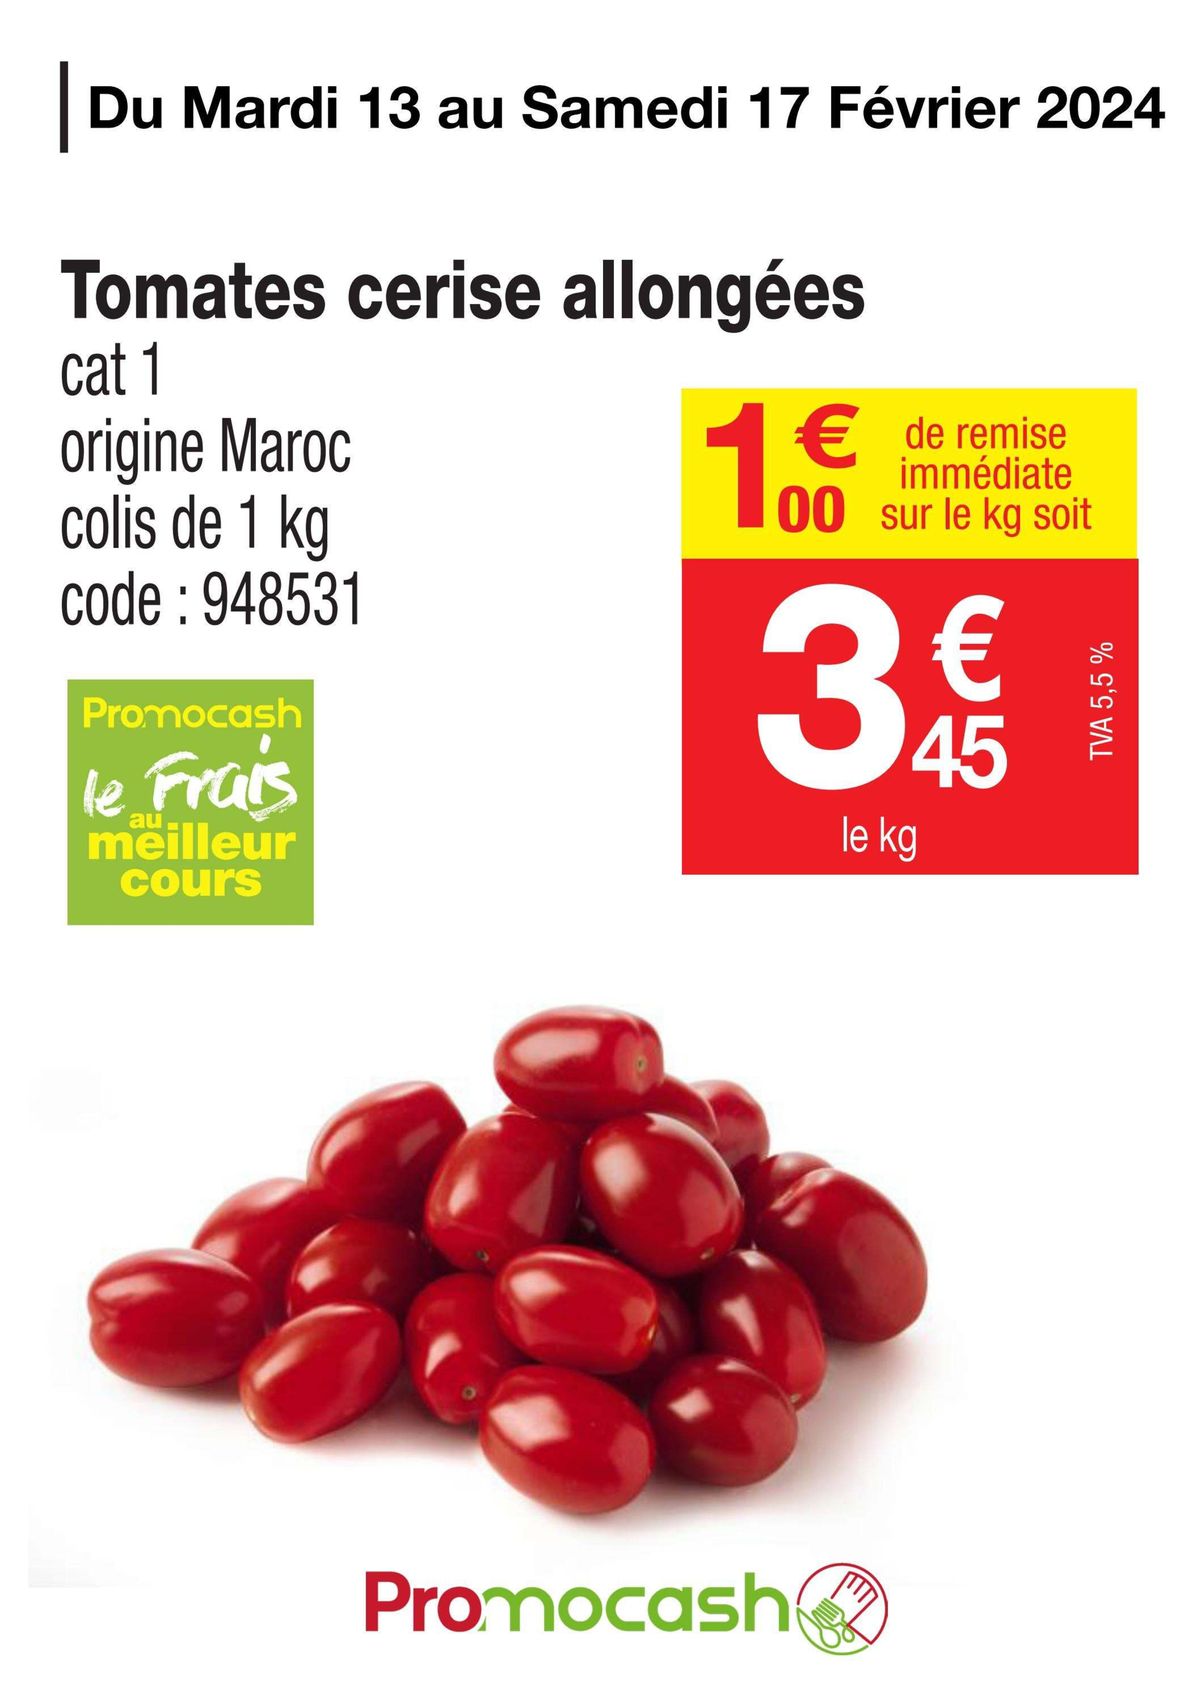 Catalogue Tomates cerise allongées, page 00001